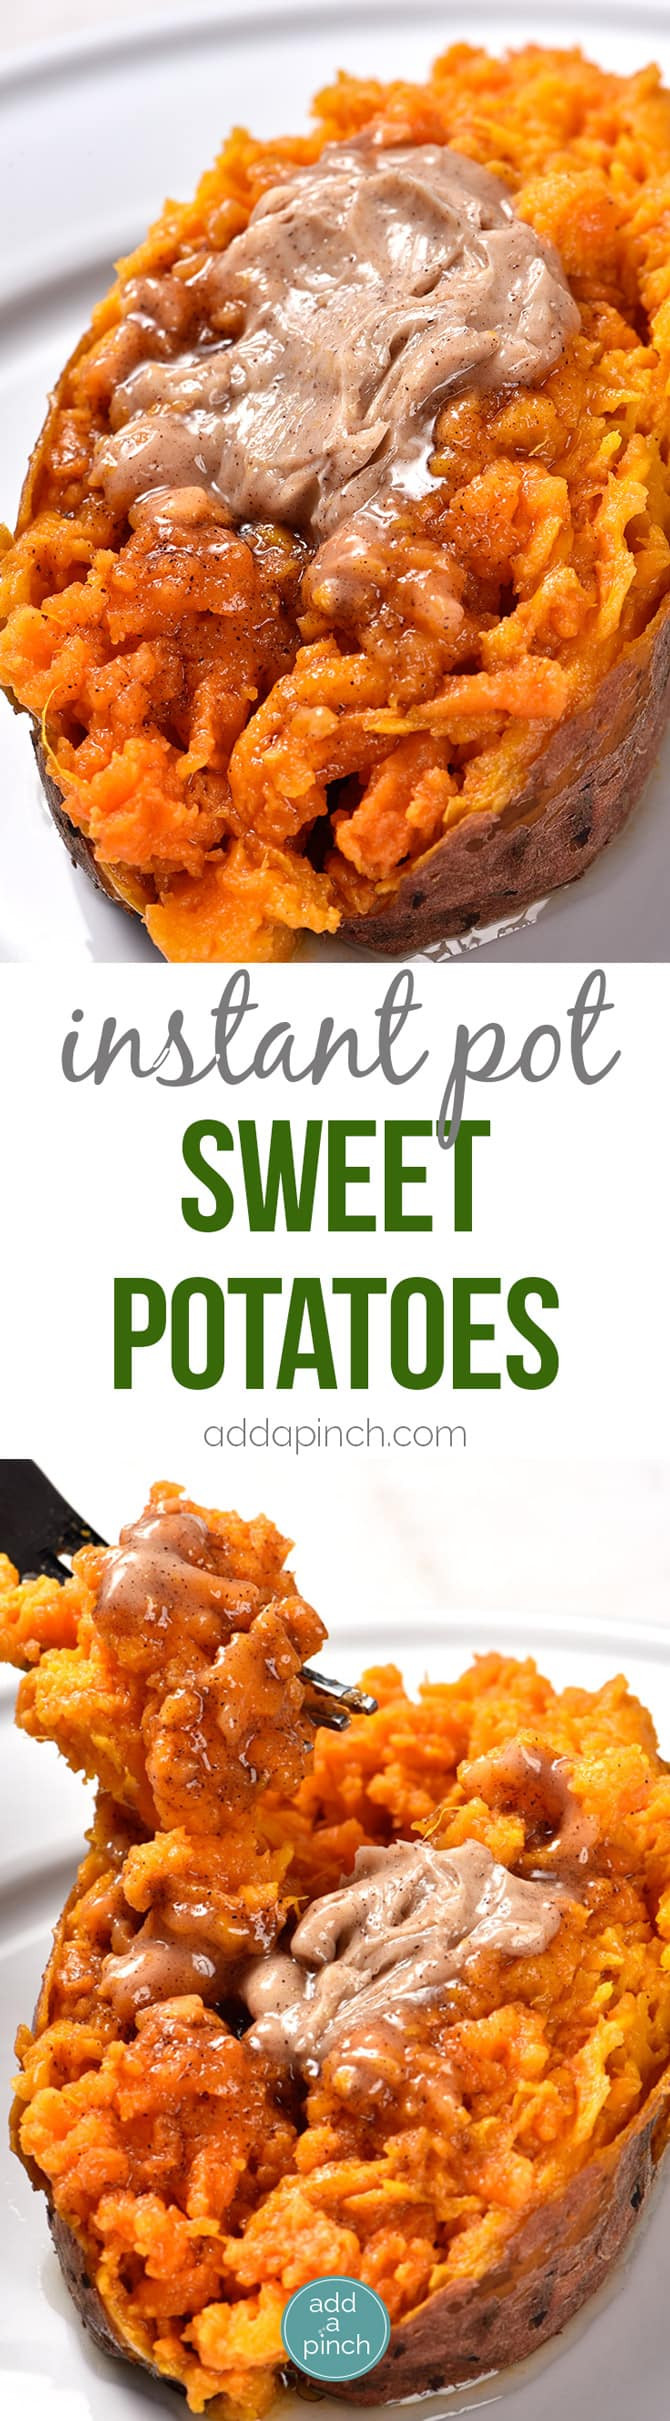 Instant Pot Sweet Potato
 Instant Pot Sweet Potatoes Recipe Add a Pinch